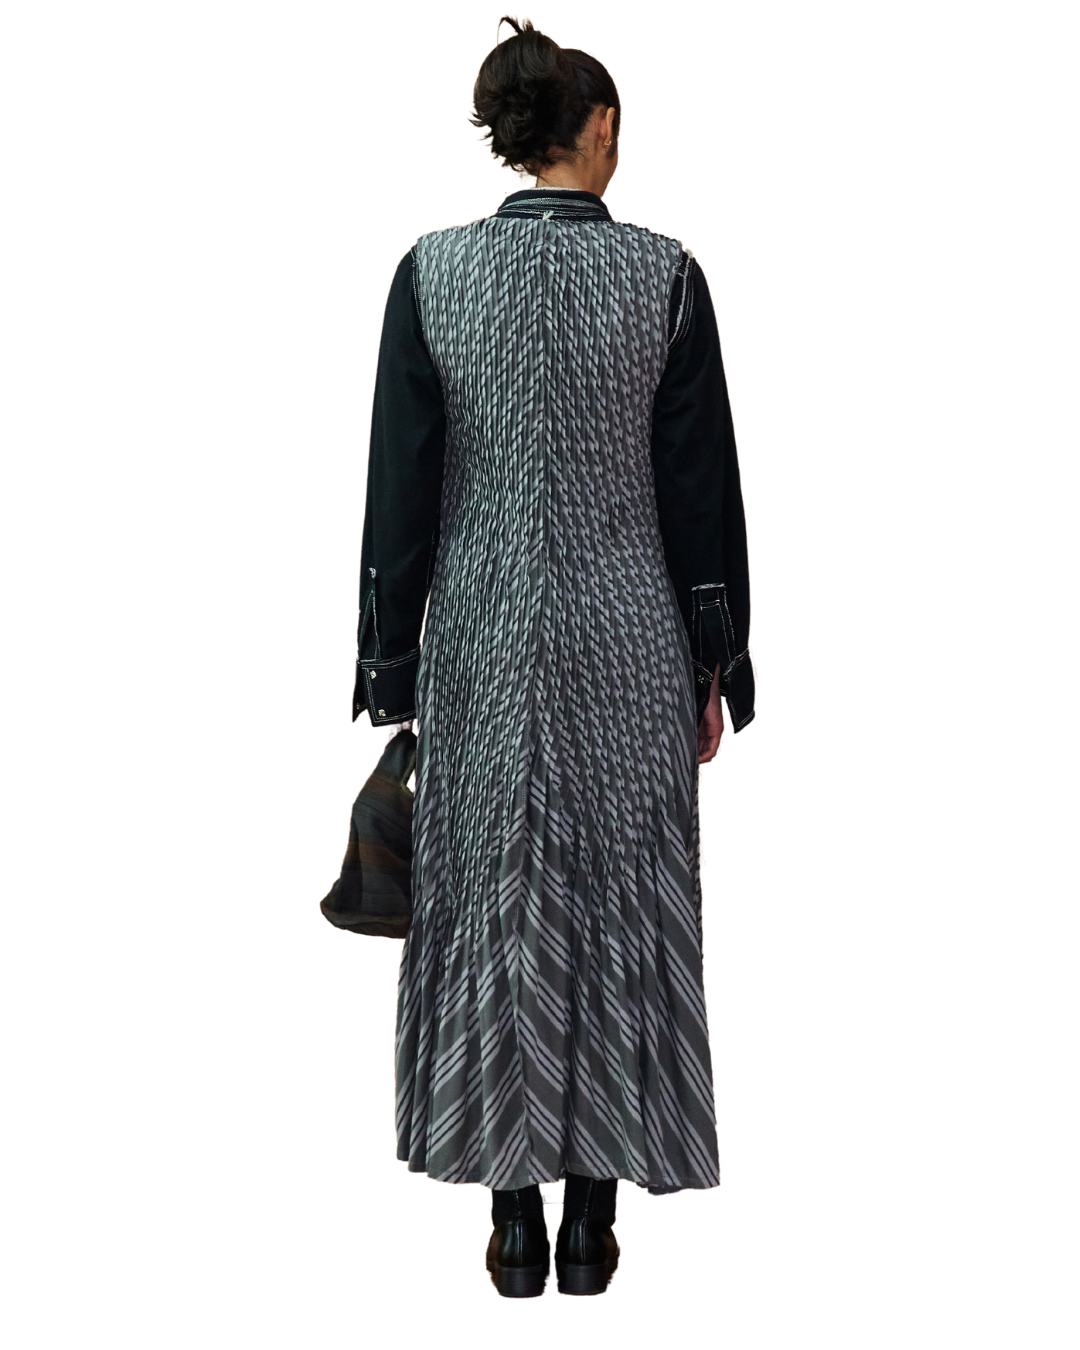 Orosa Tupi Dress